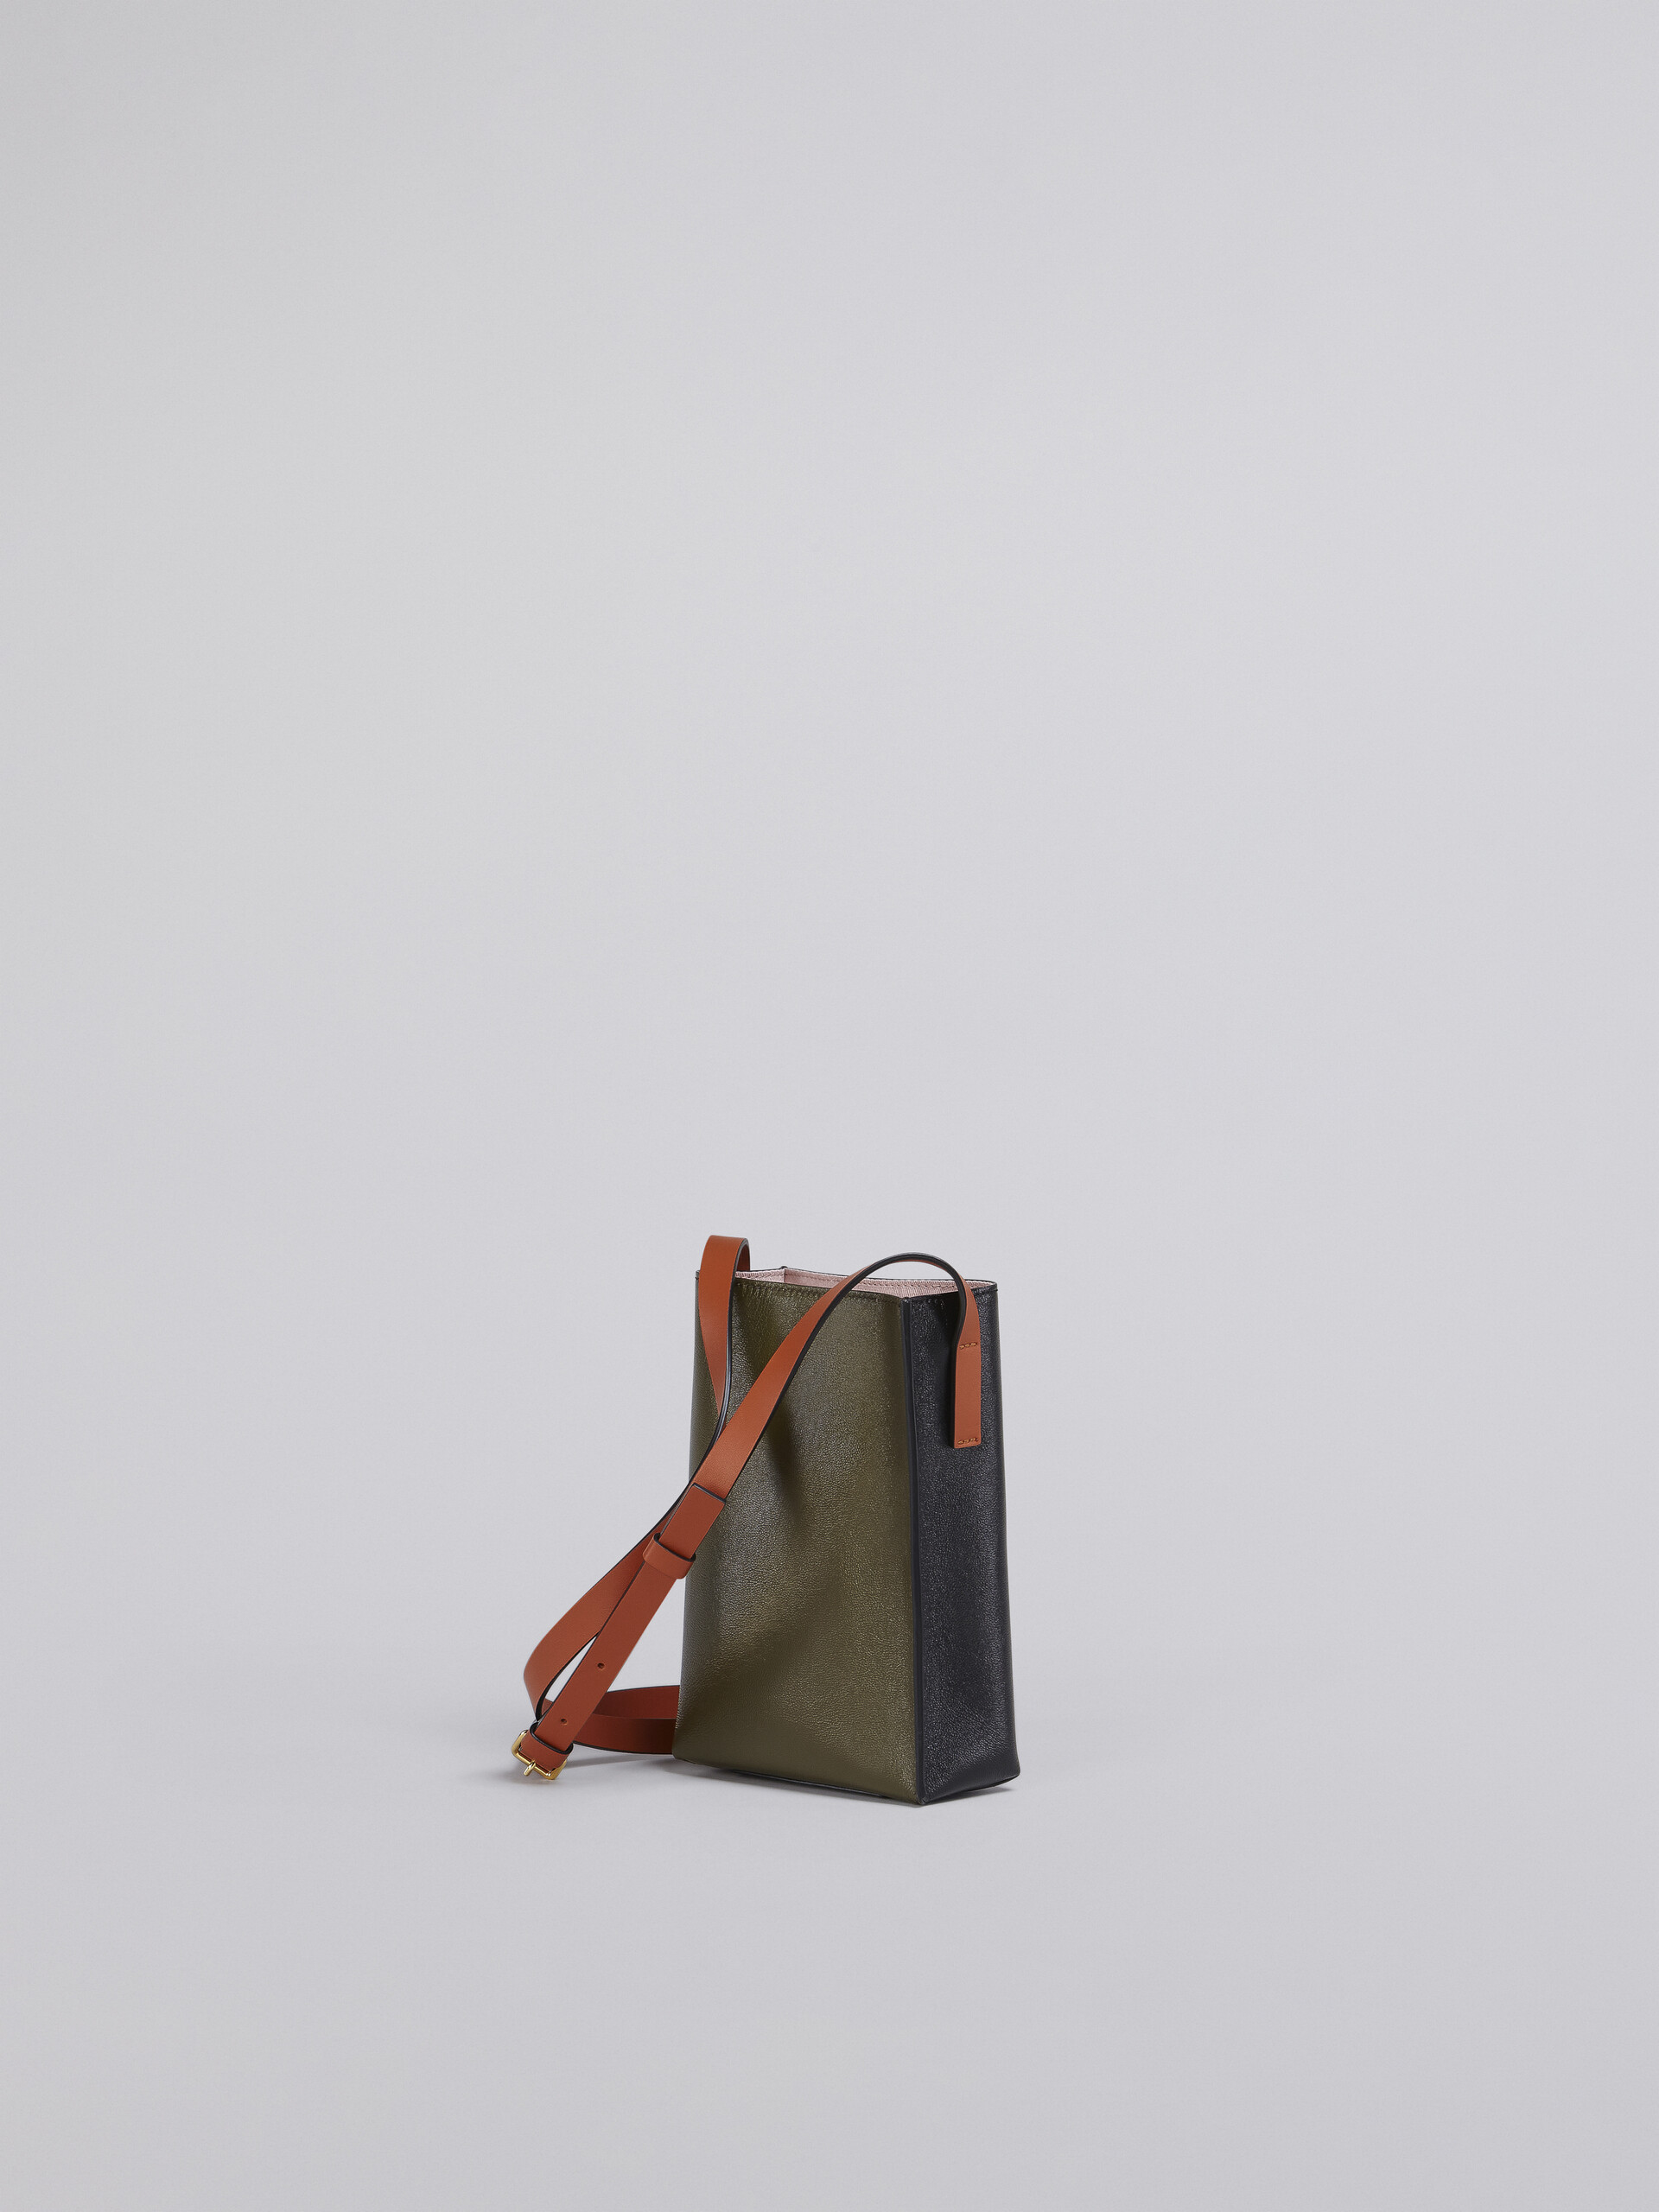 Museo Soft Bag Nano in pelle nera e grigia - Borse a spalla - Image 3